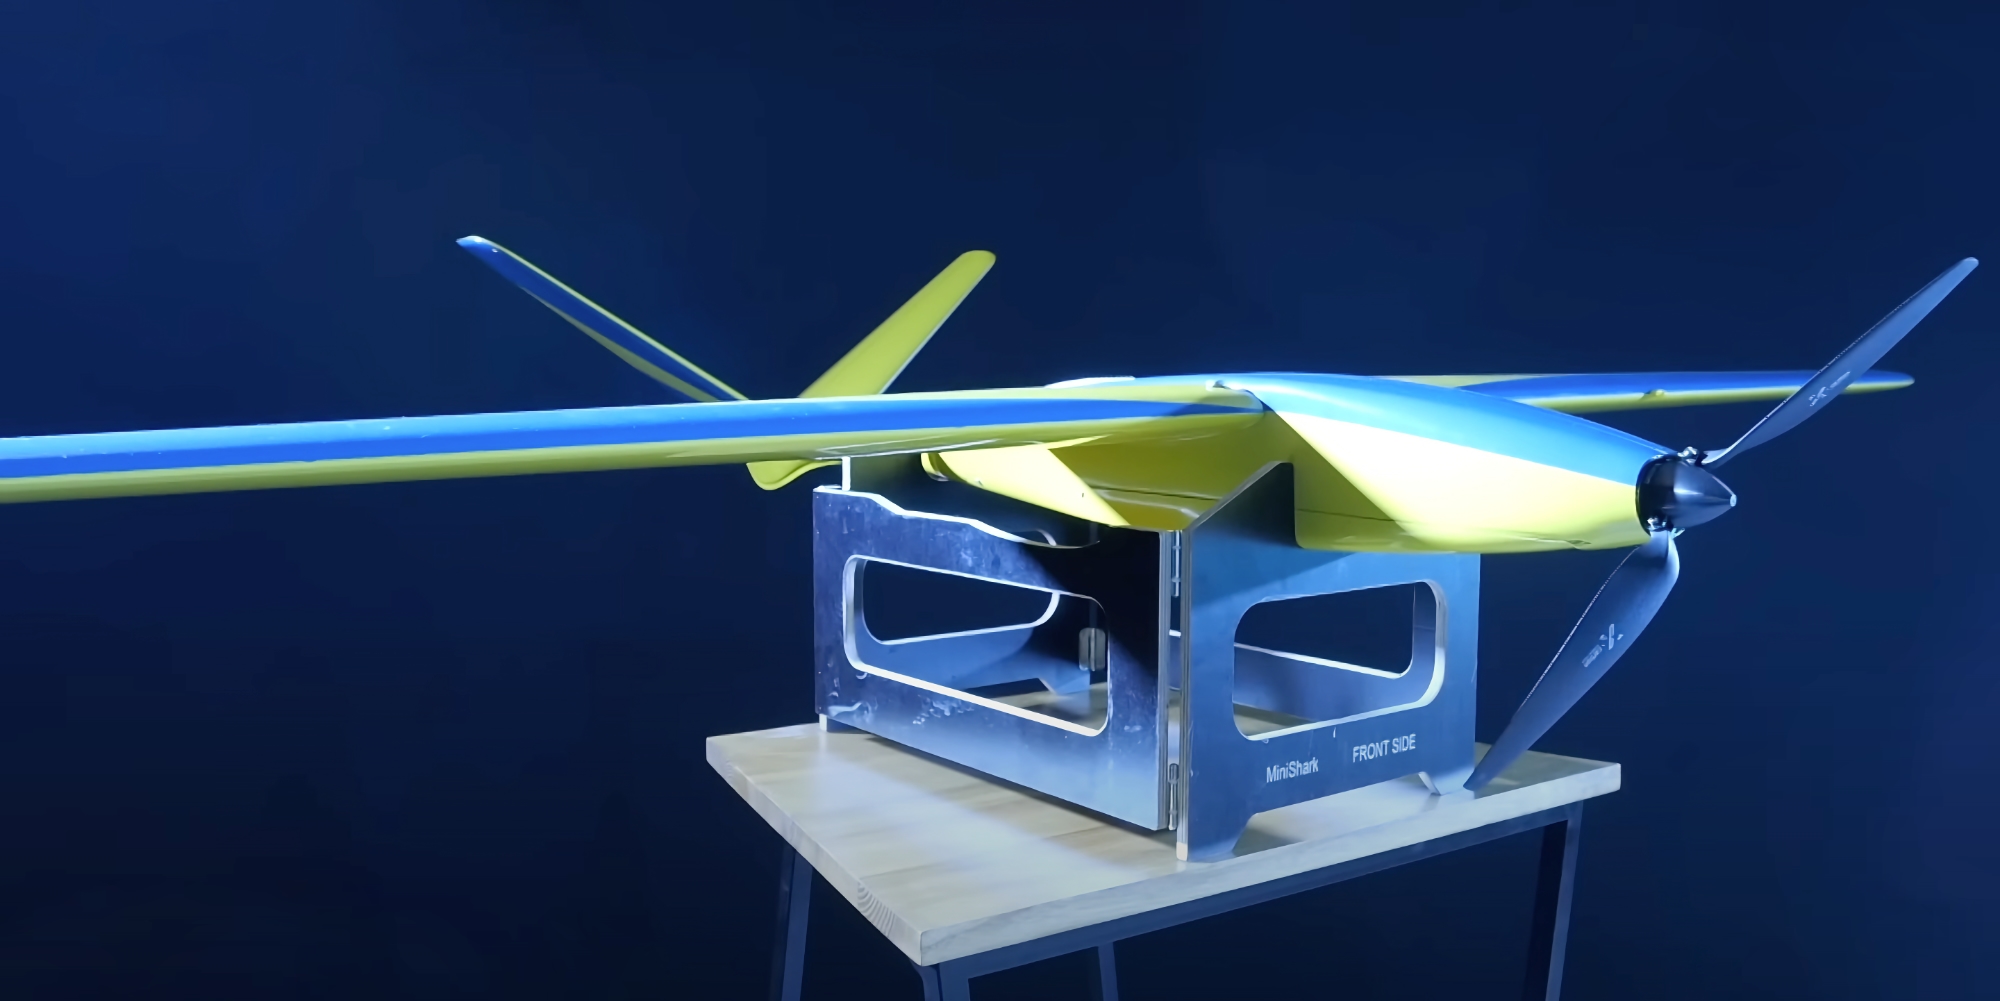 Ukrspecsystems prezentuje MiniShark: kompaktowy UAV zwiadowczy, który może latać do 35 km z prędkością 120 km/h